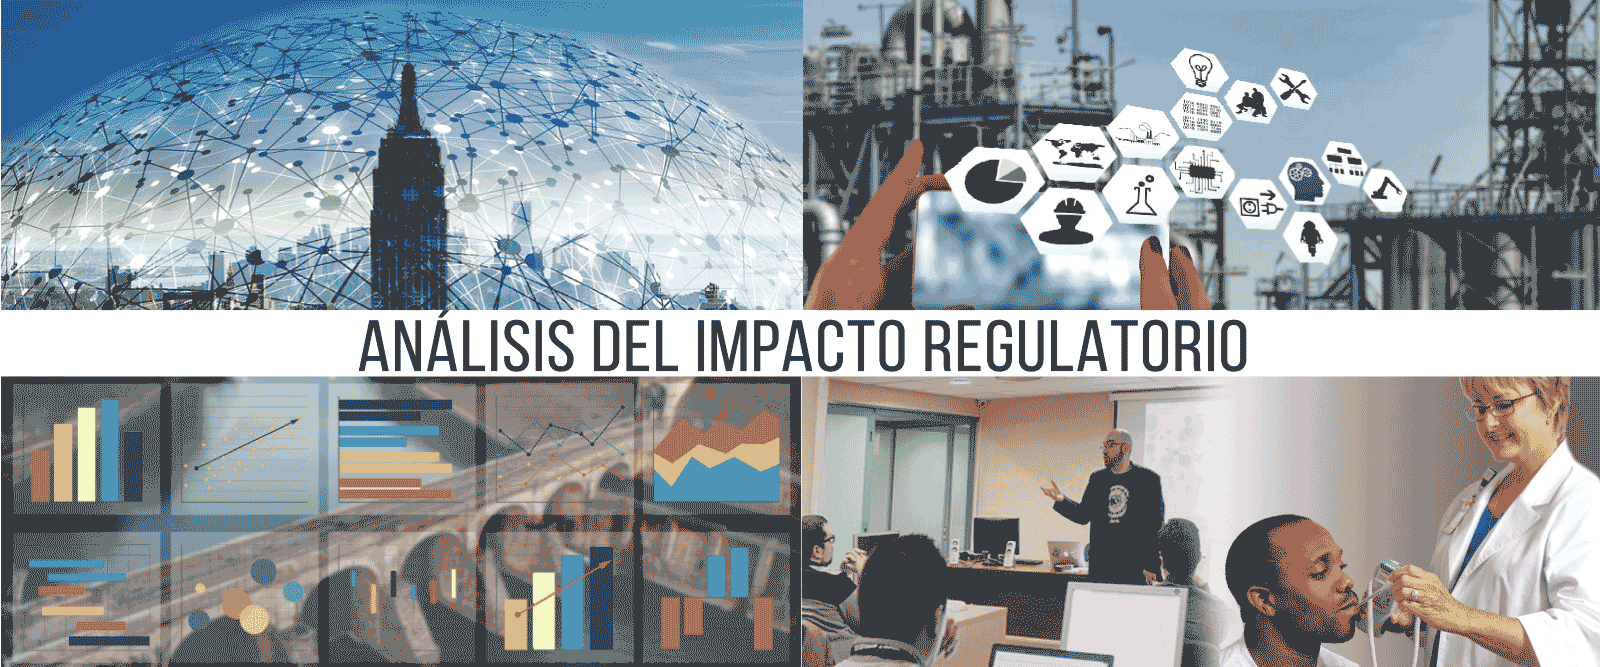 Análisis del impacto regulatorio course image